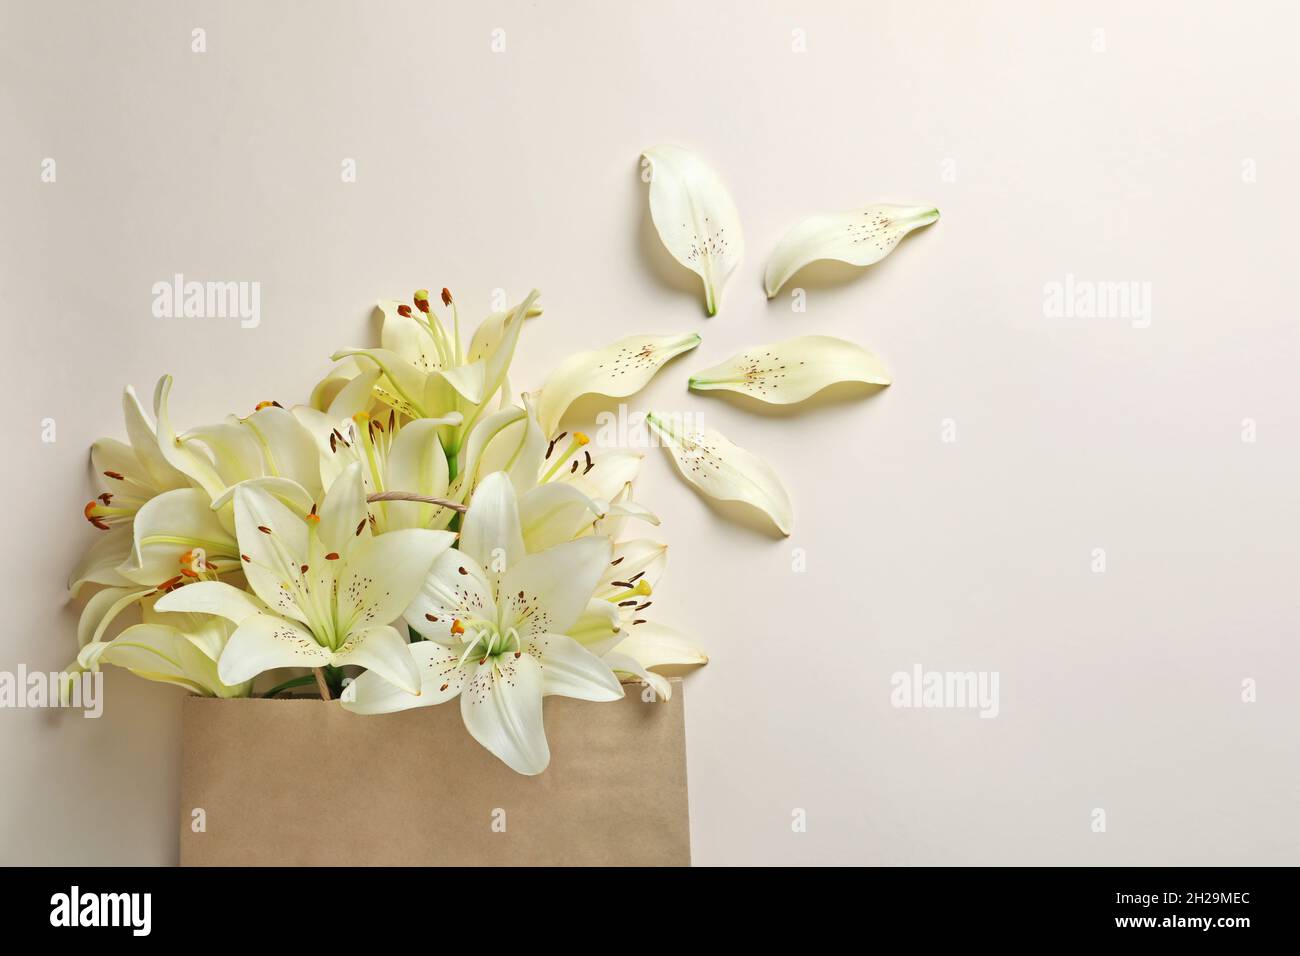 Composition de couche plate avec fleurs de nénuphars sur fond clair Banque D'Images